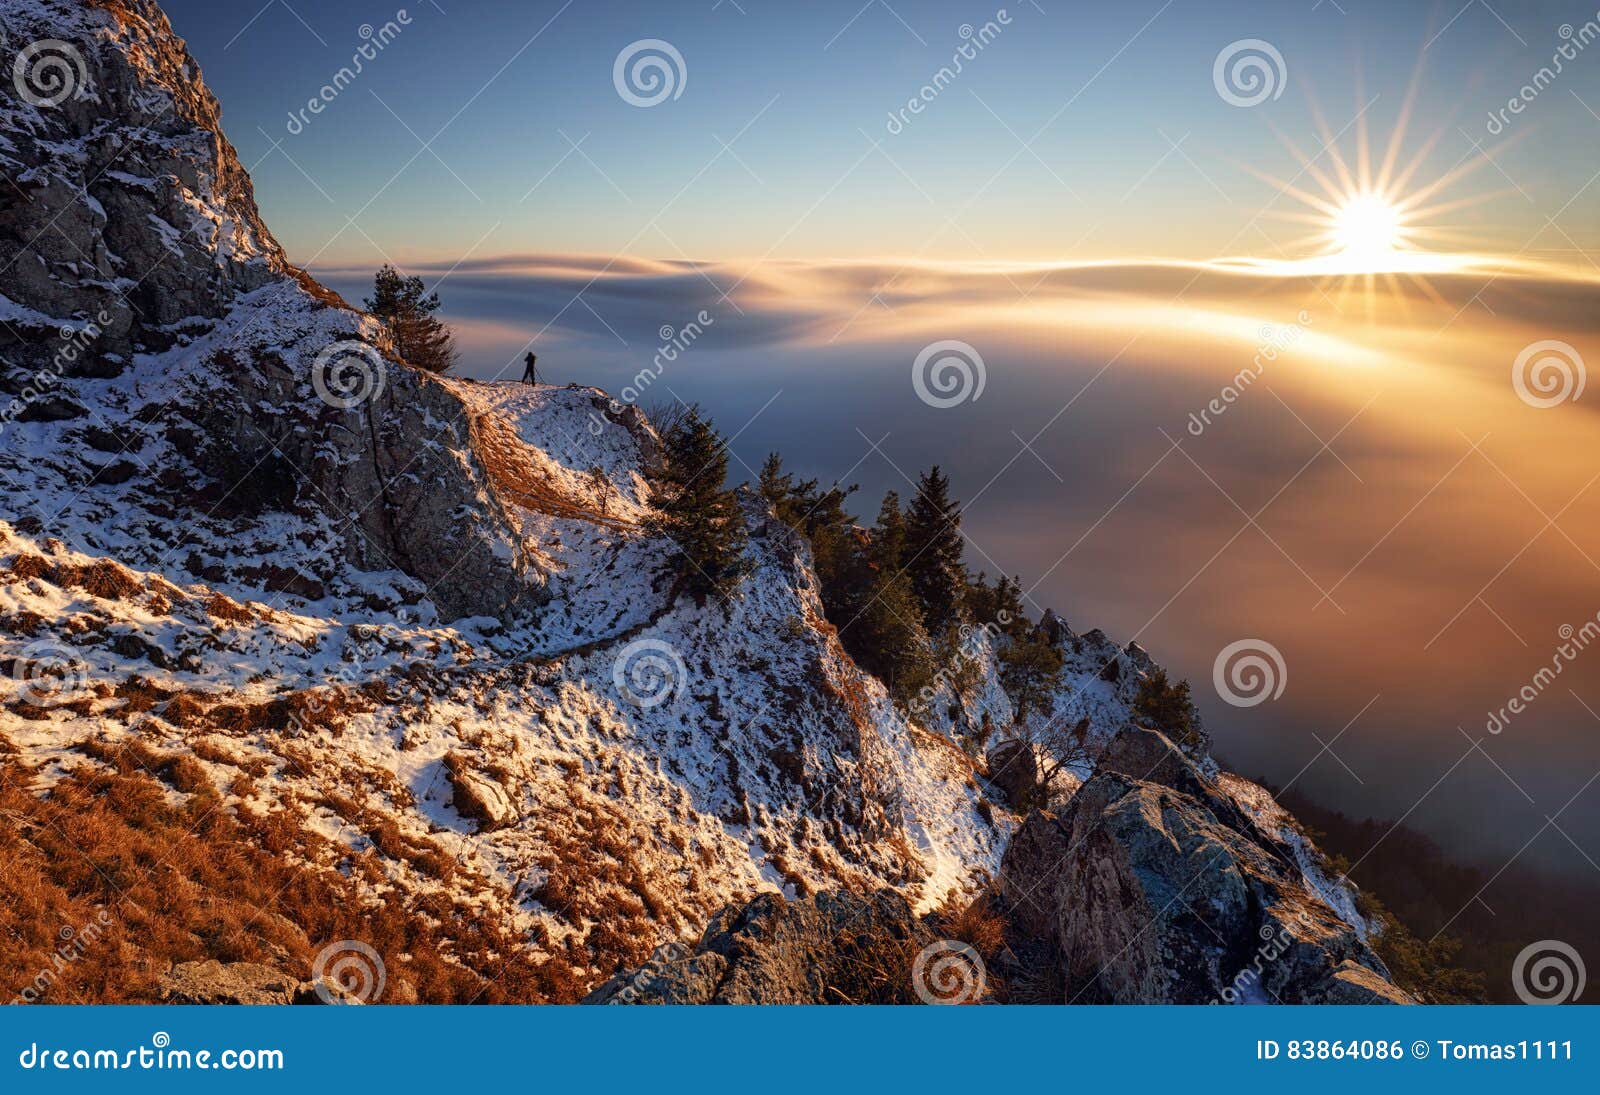 sun, mountain landcape above clouds, nice nature